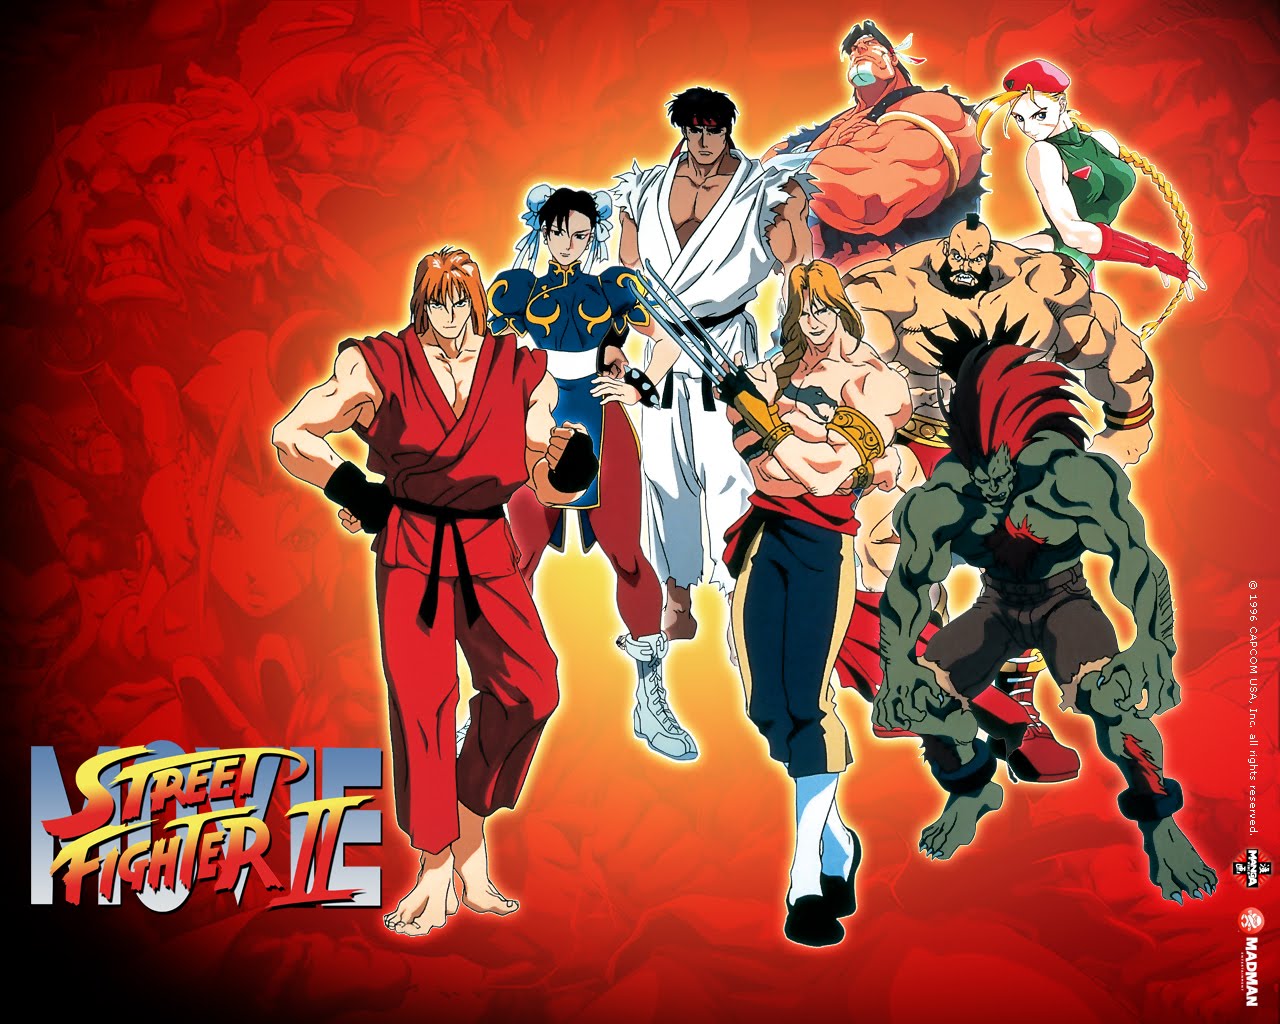 Street Fighter II: The Animated Movie 1994 - IMDb